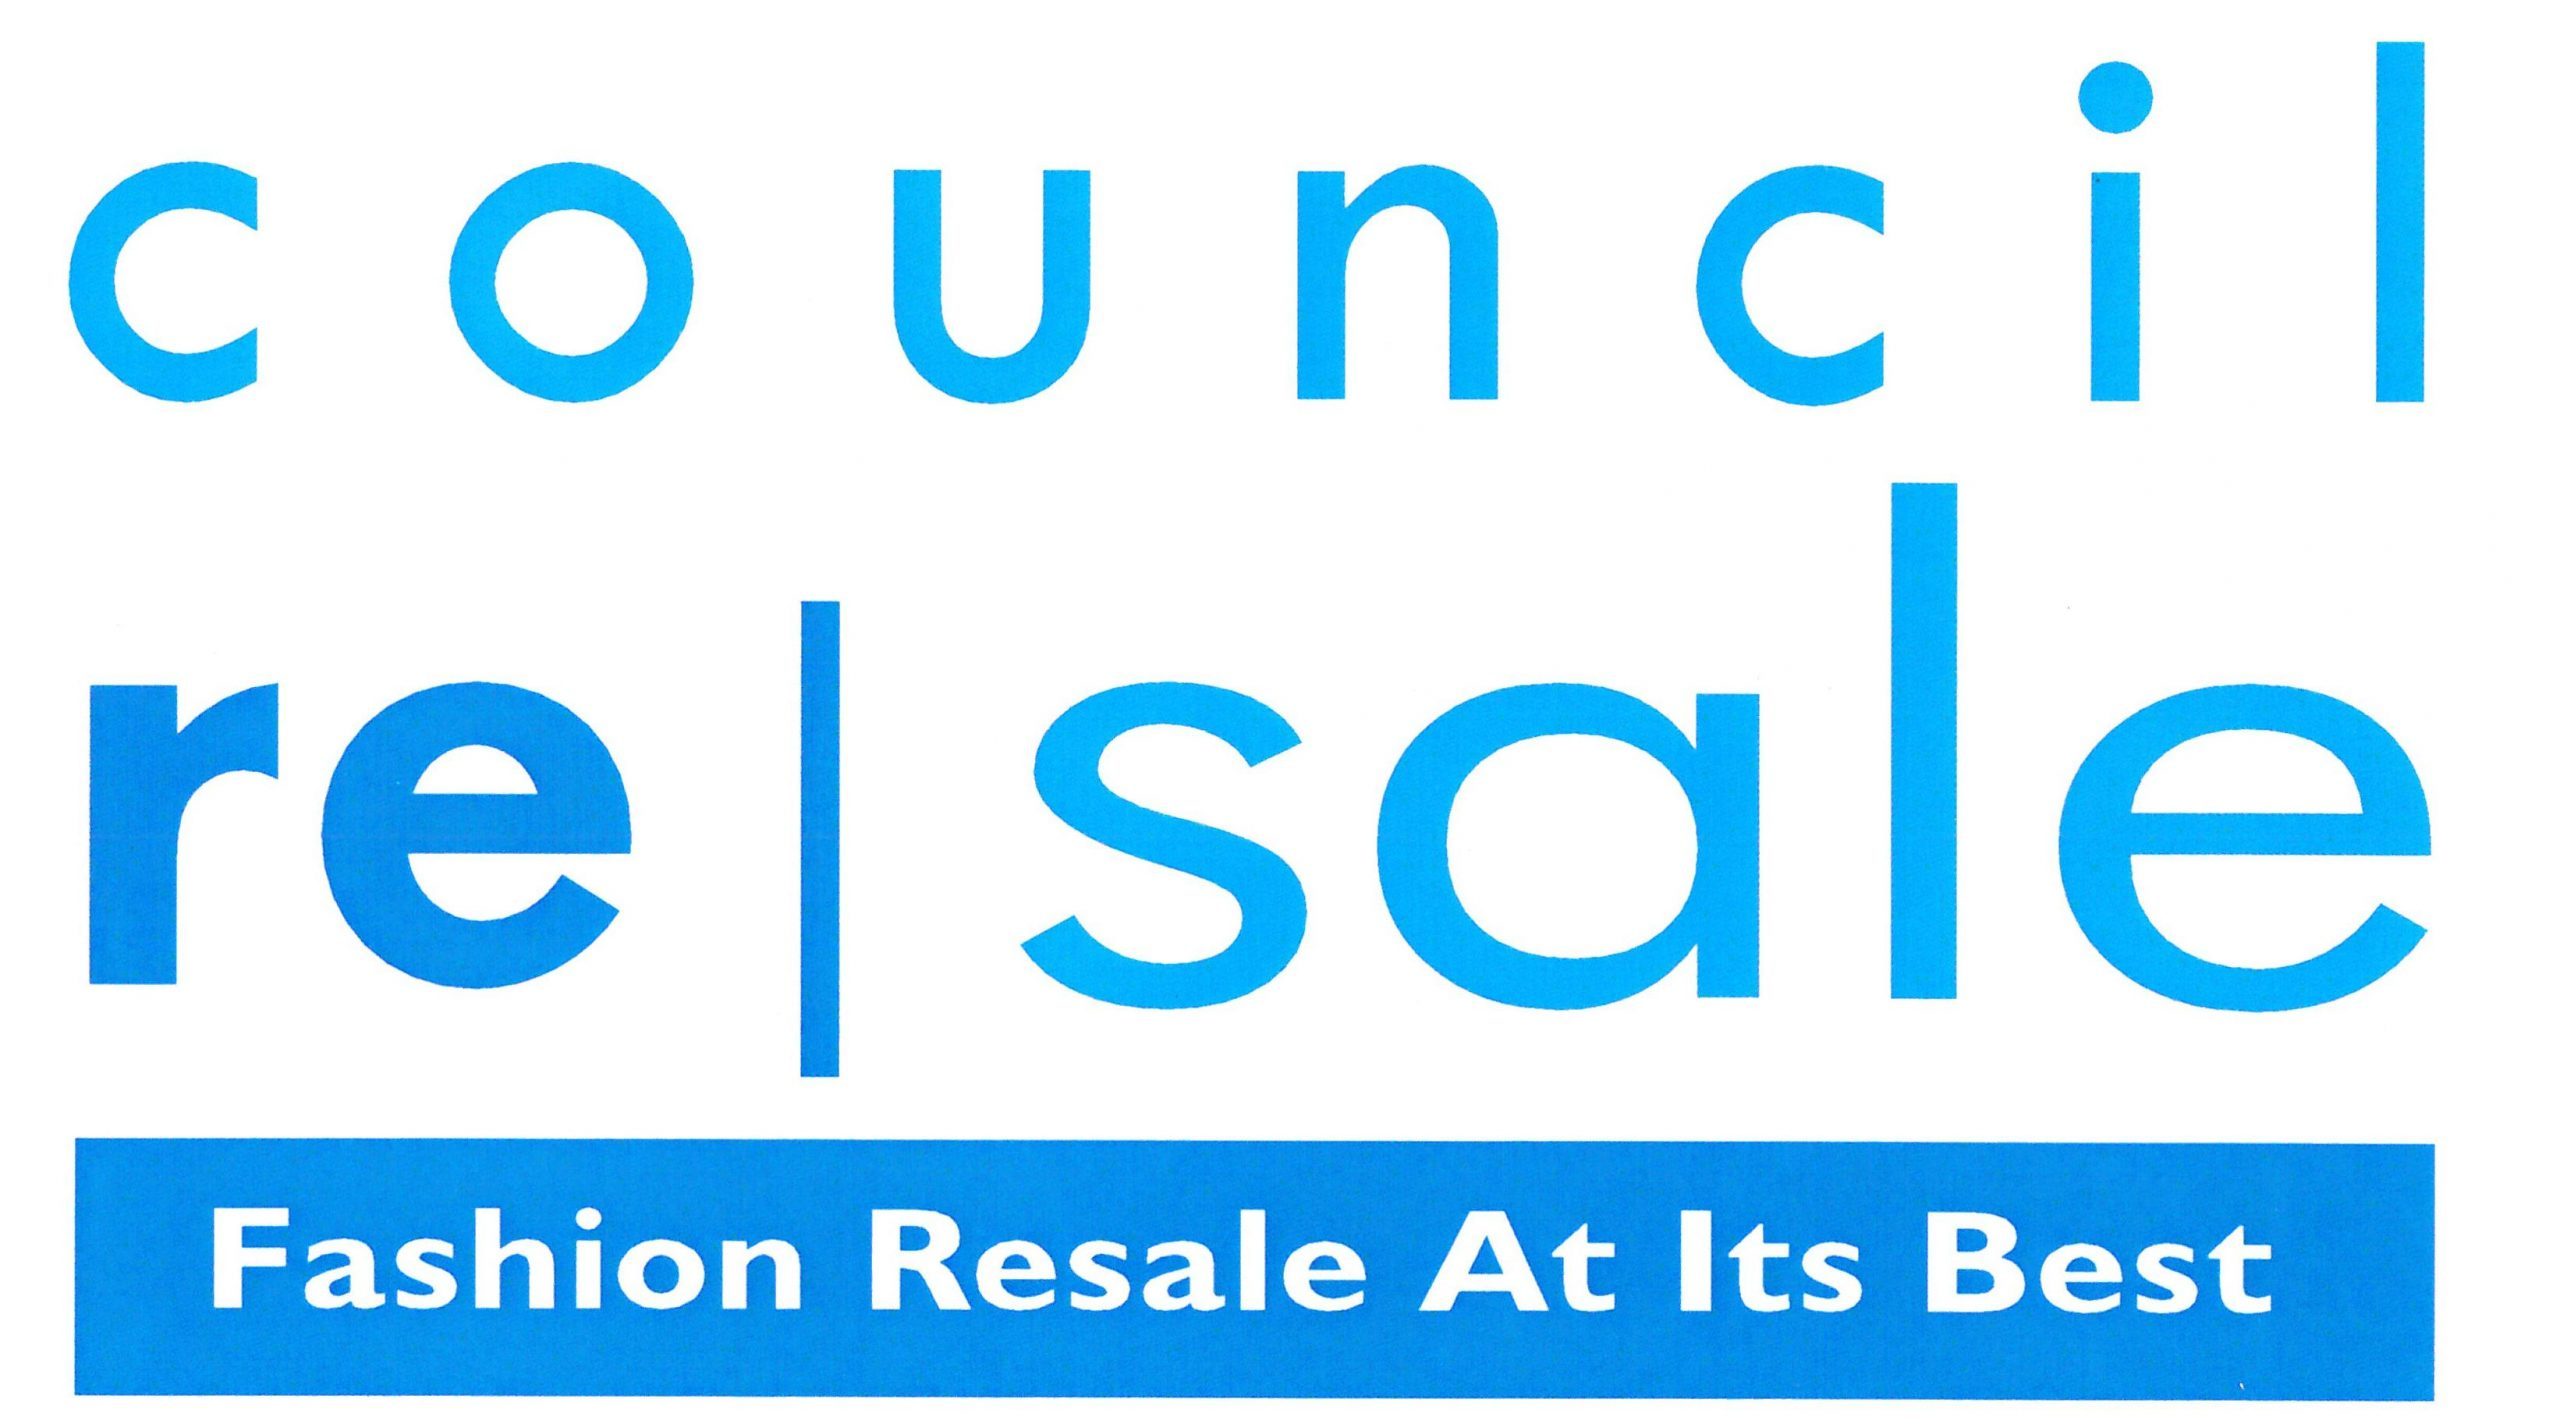 Council re|sale